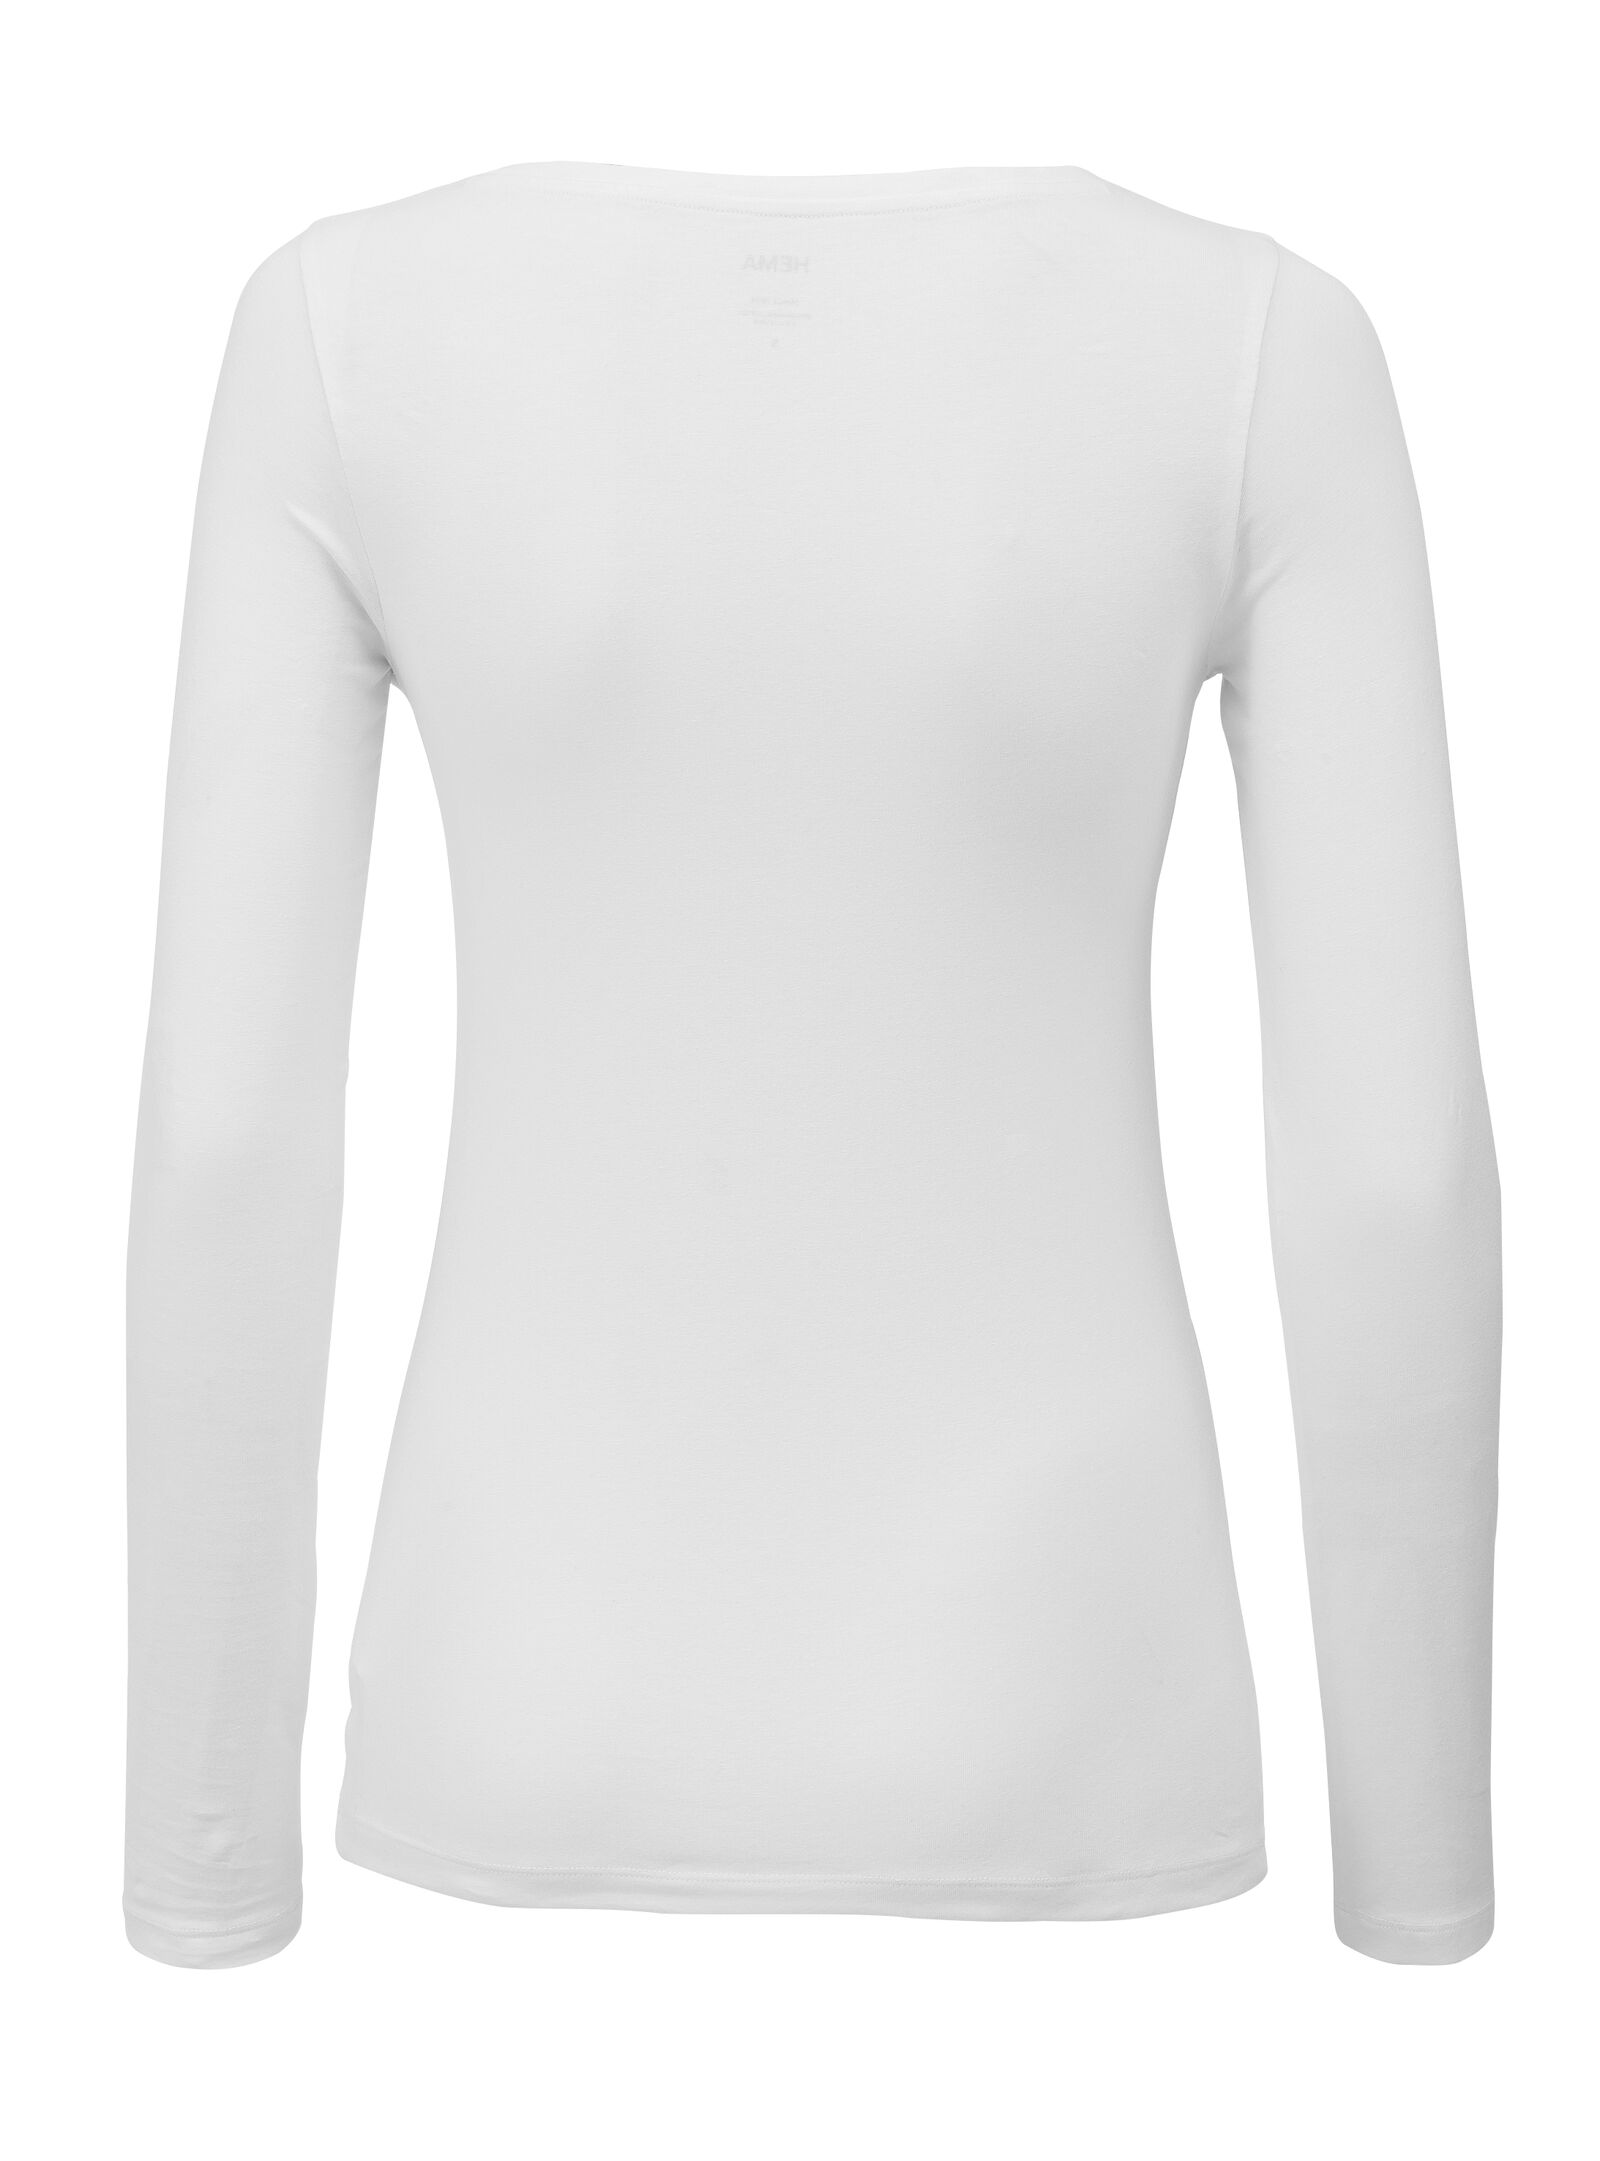 Damen-Shirt weiß S - 36381771 - HEMA